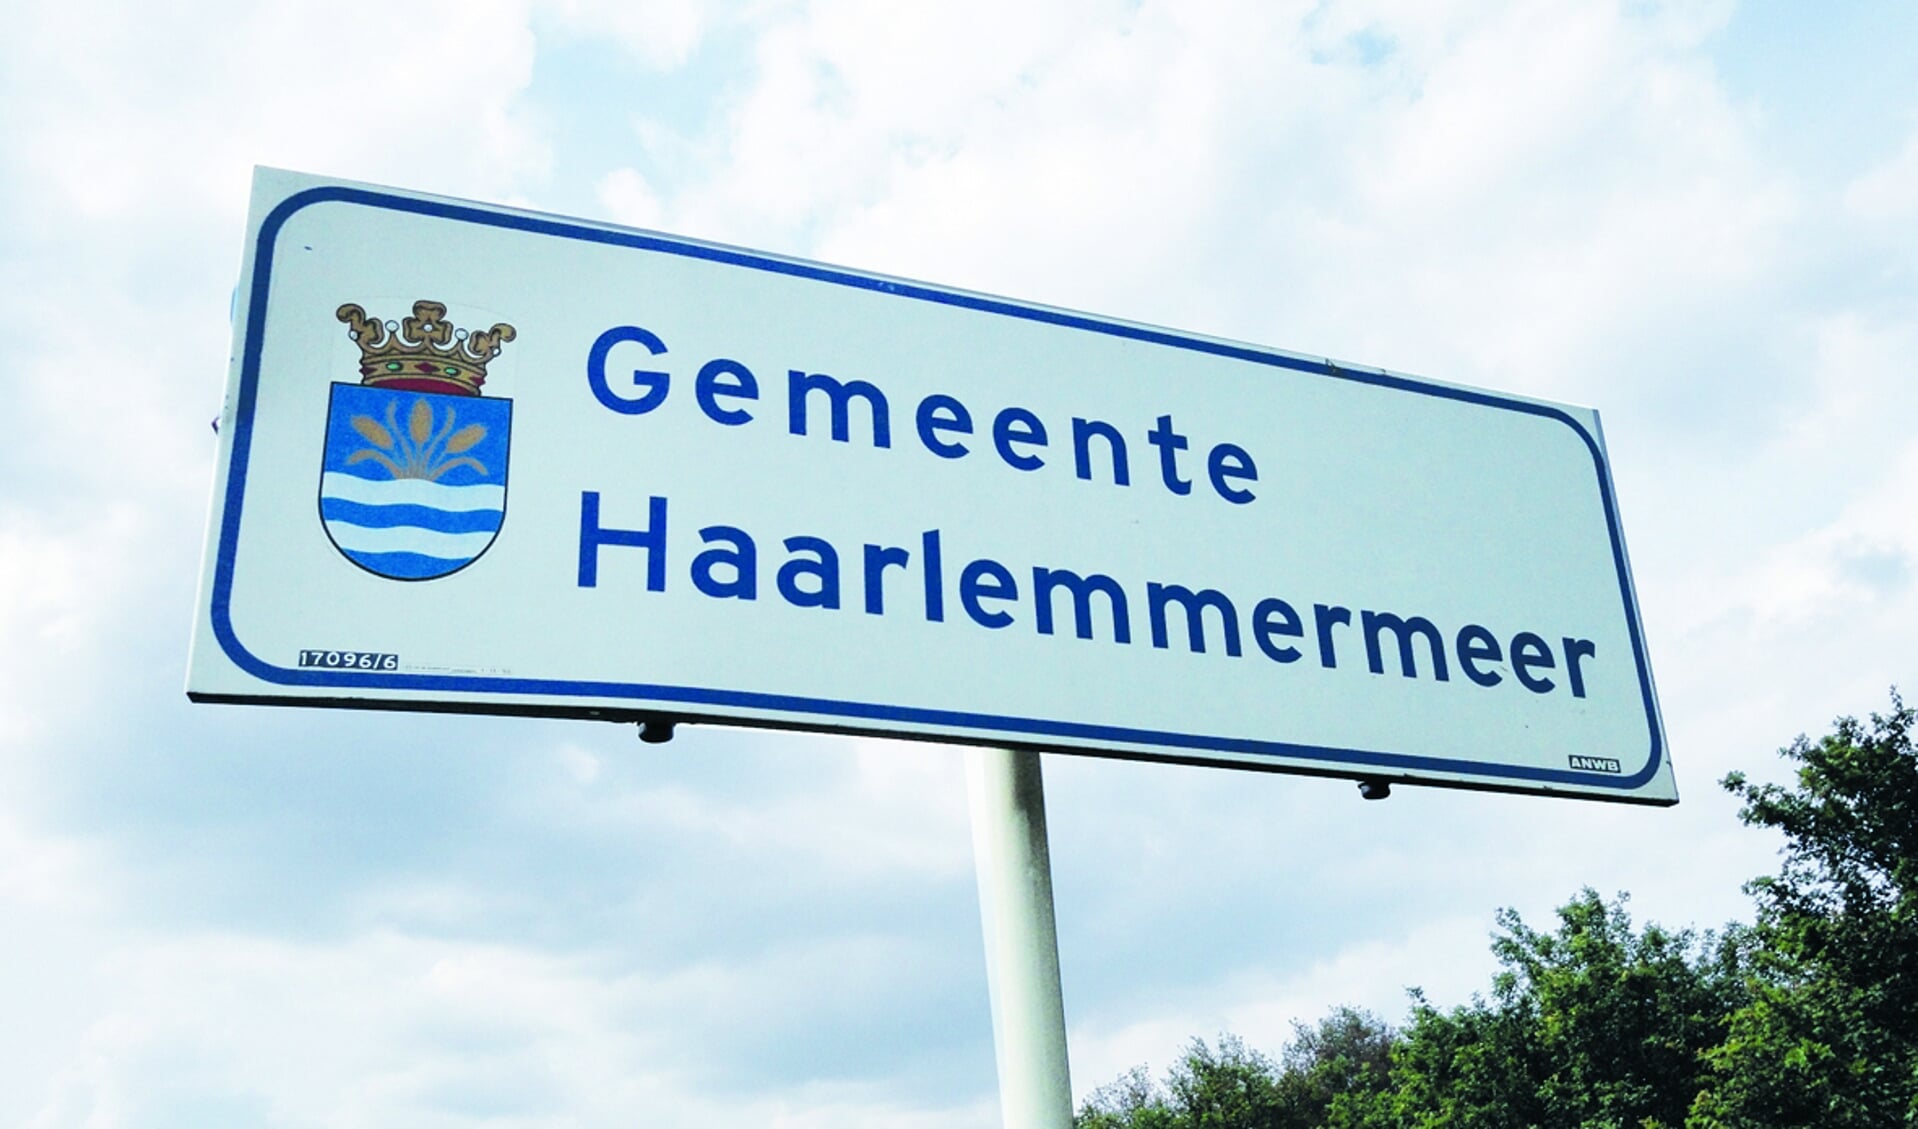 Bord gemeente Haarlemmermeer. 